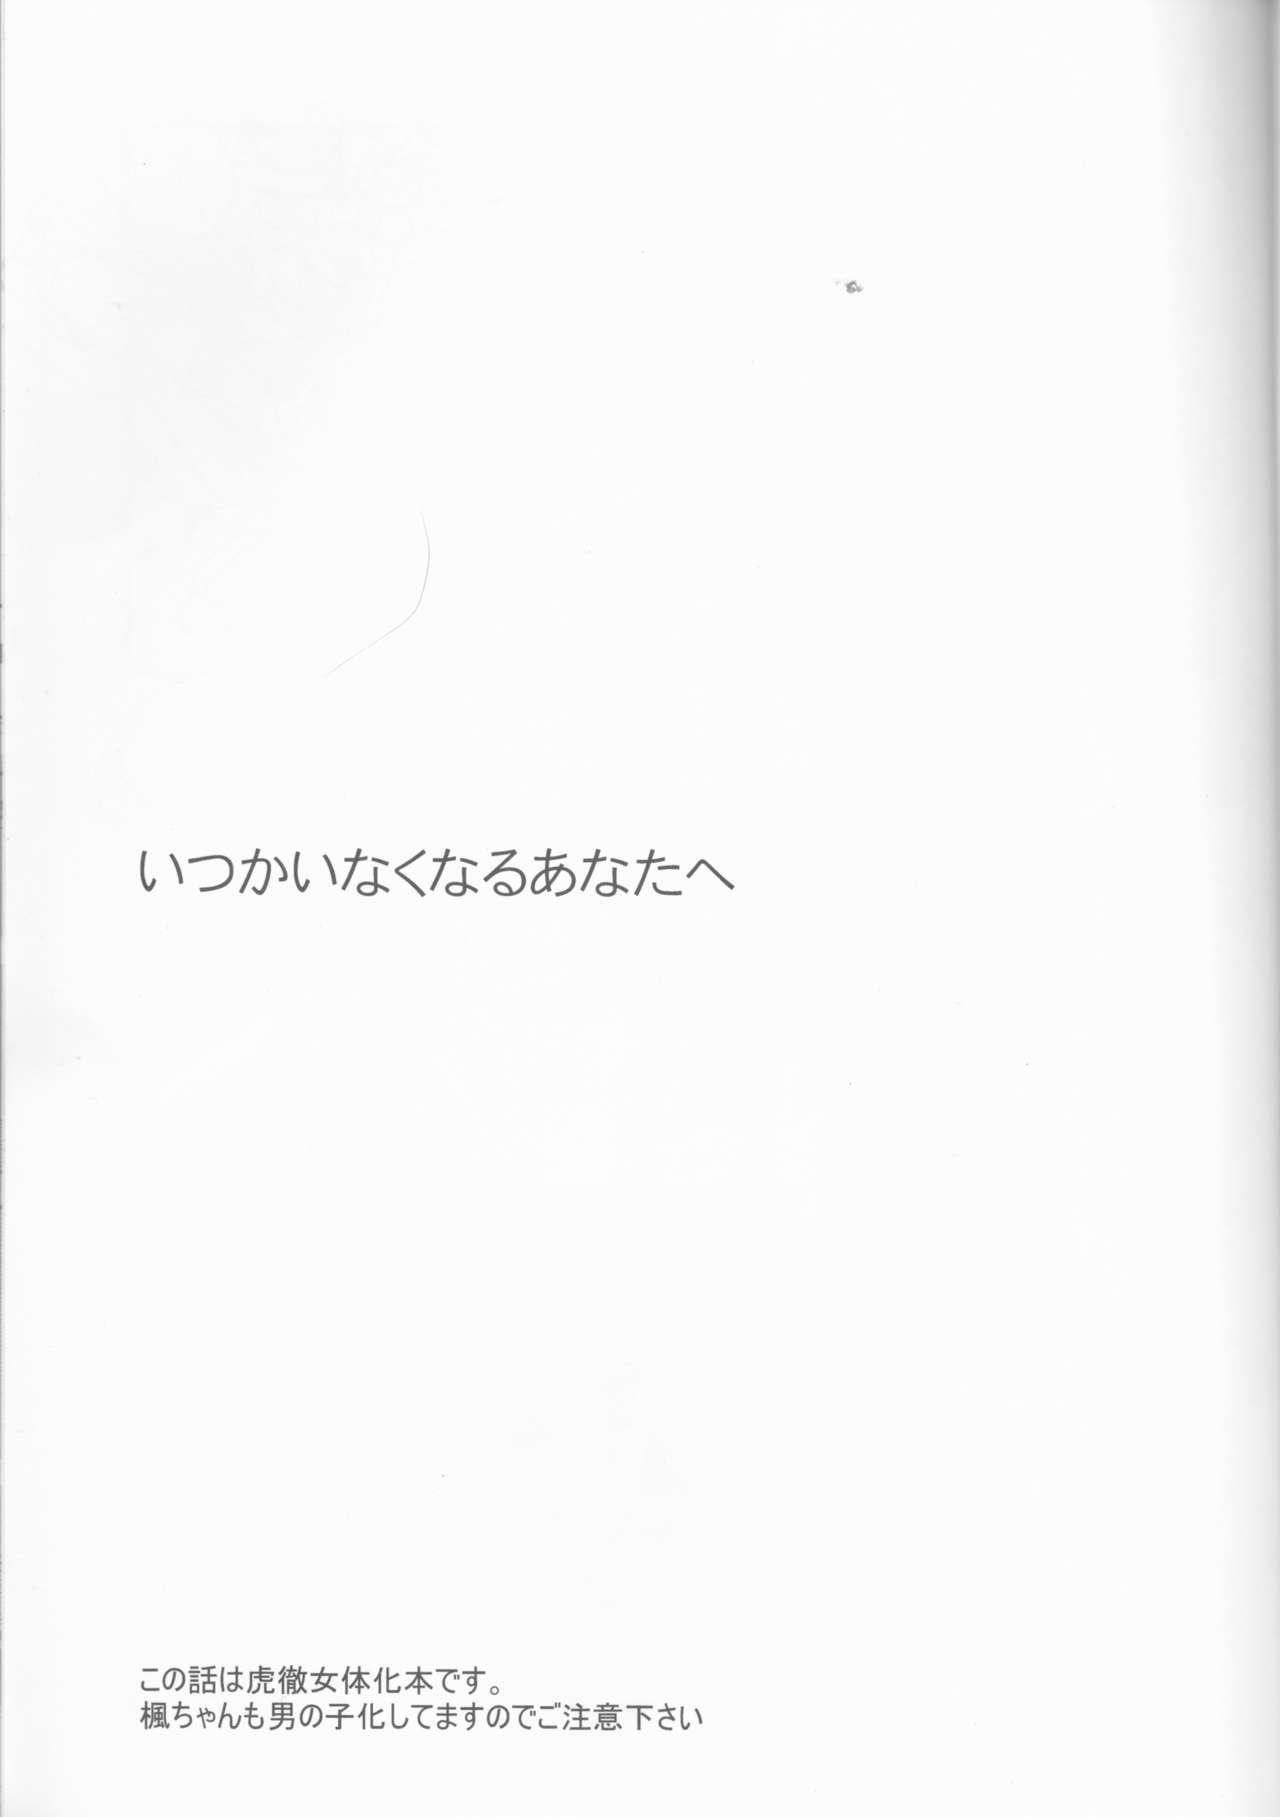 English Itsuka wa inaku naru kimi e - Tiger and bunny Short Hair - Page 2